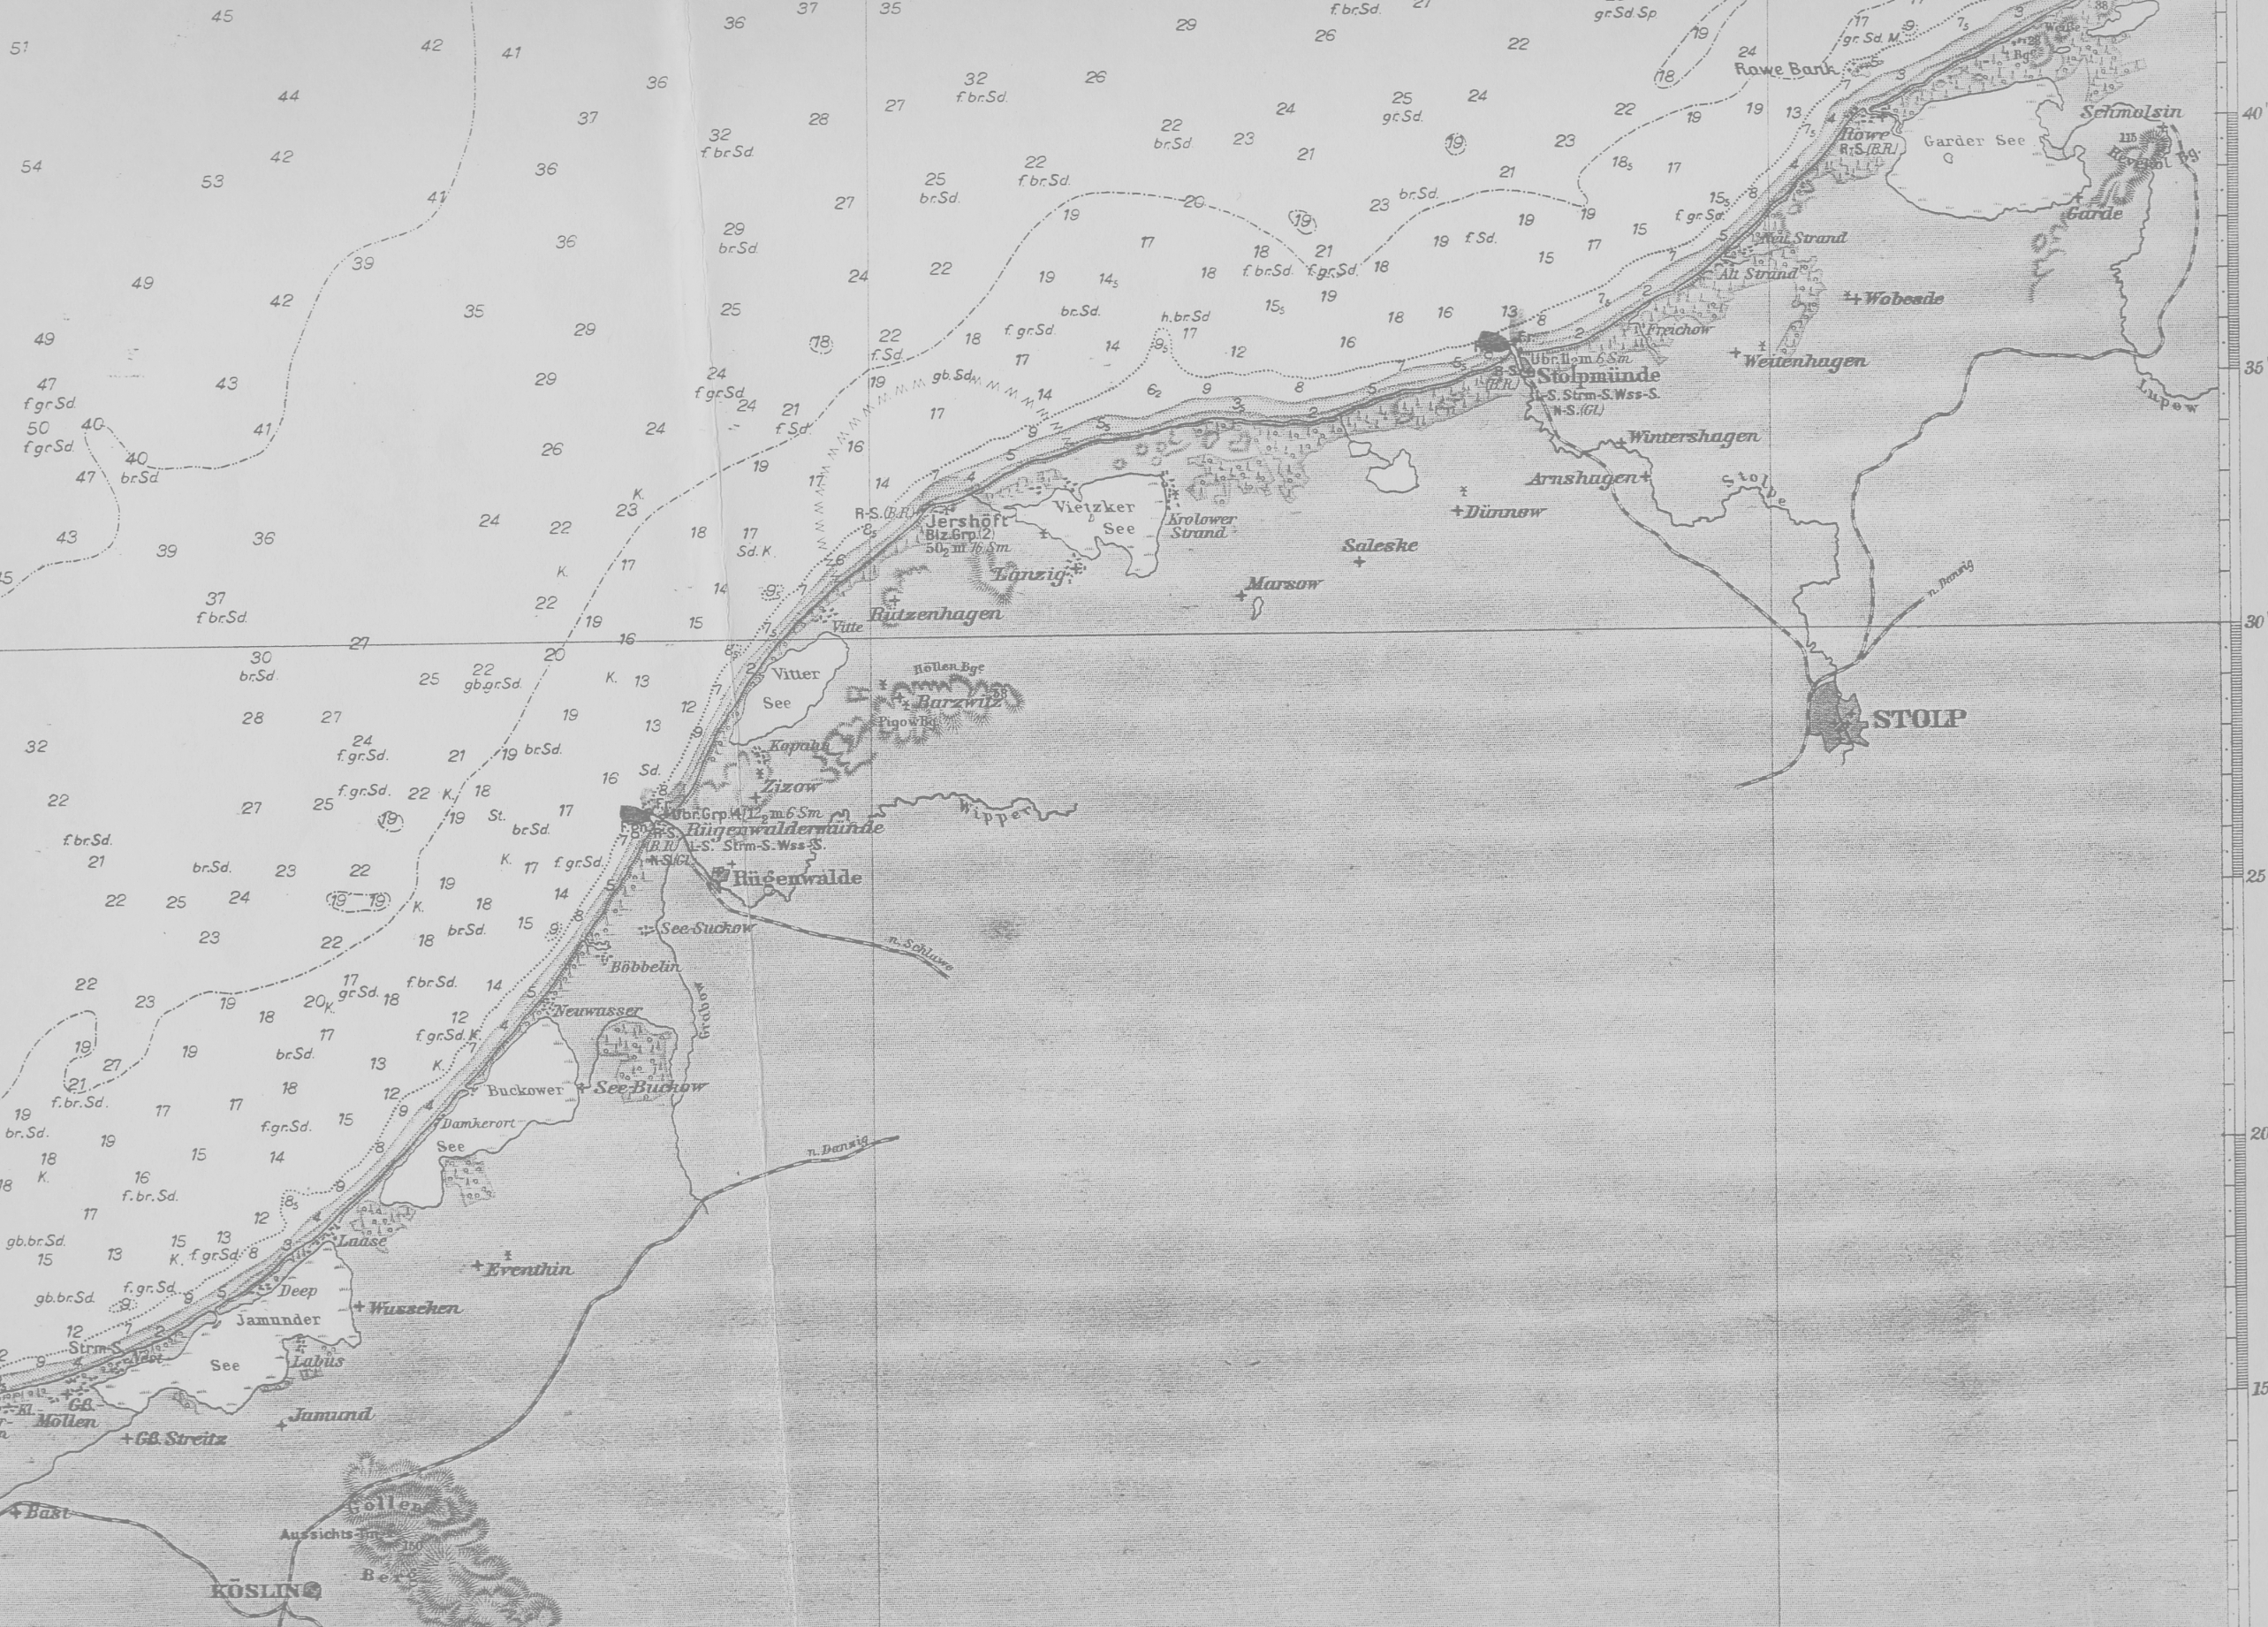 Pokazana poniżej (tylko w części dotyczącej słupskiego wybrzeża) mapa morska określa znaki nawigacyjne wzdłuż morskiego wybrzeża i drogi wodnej- Słupi; od Bałtyku do miasta Słupsk.